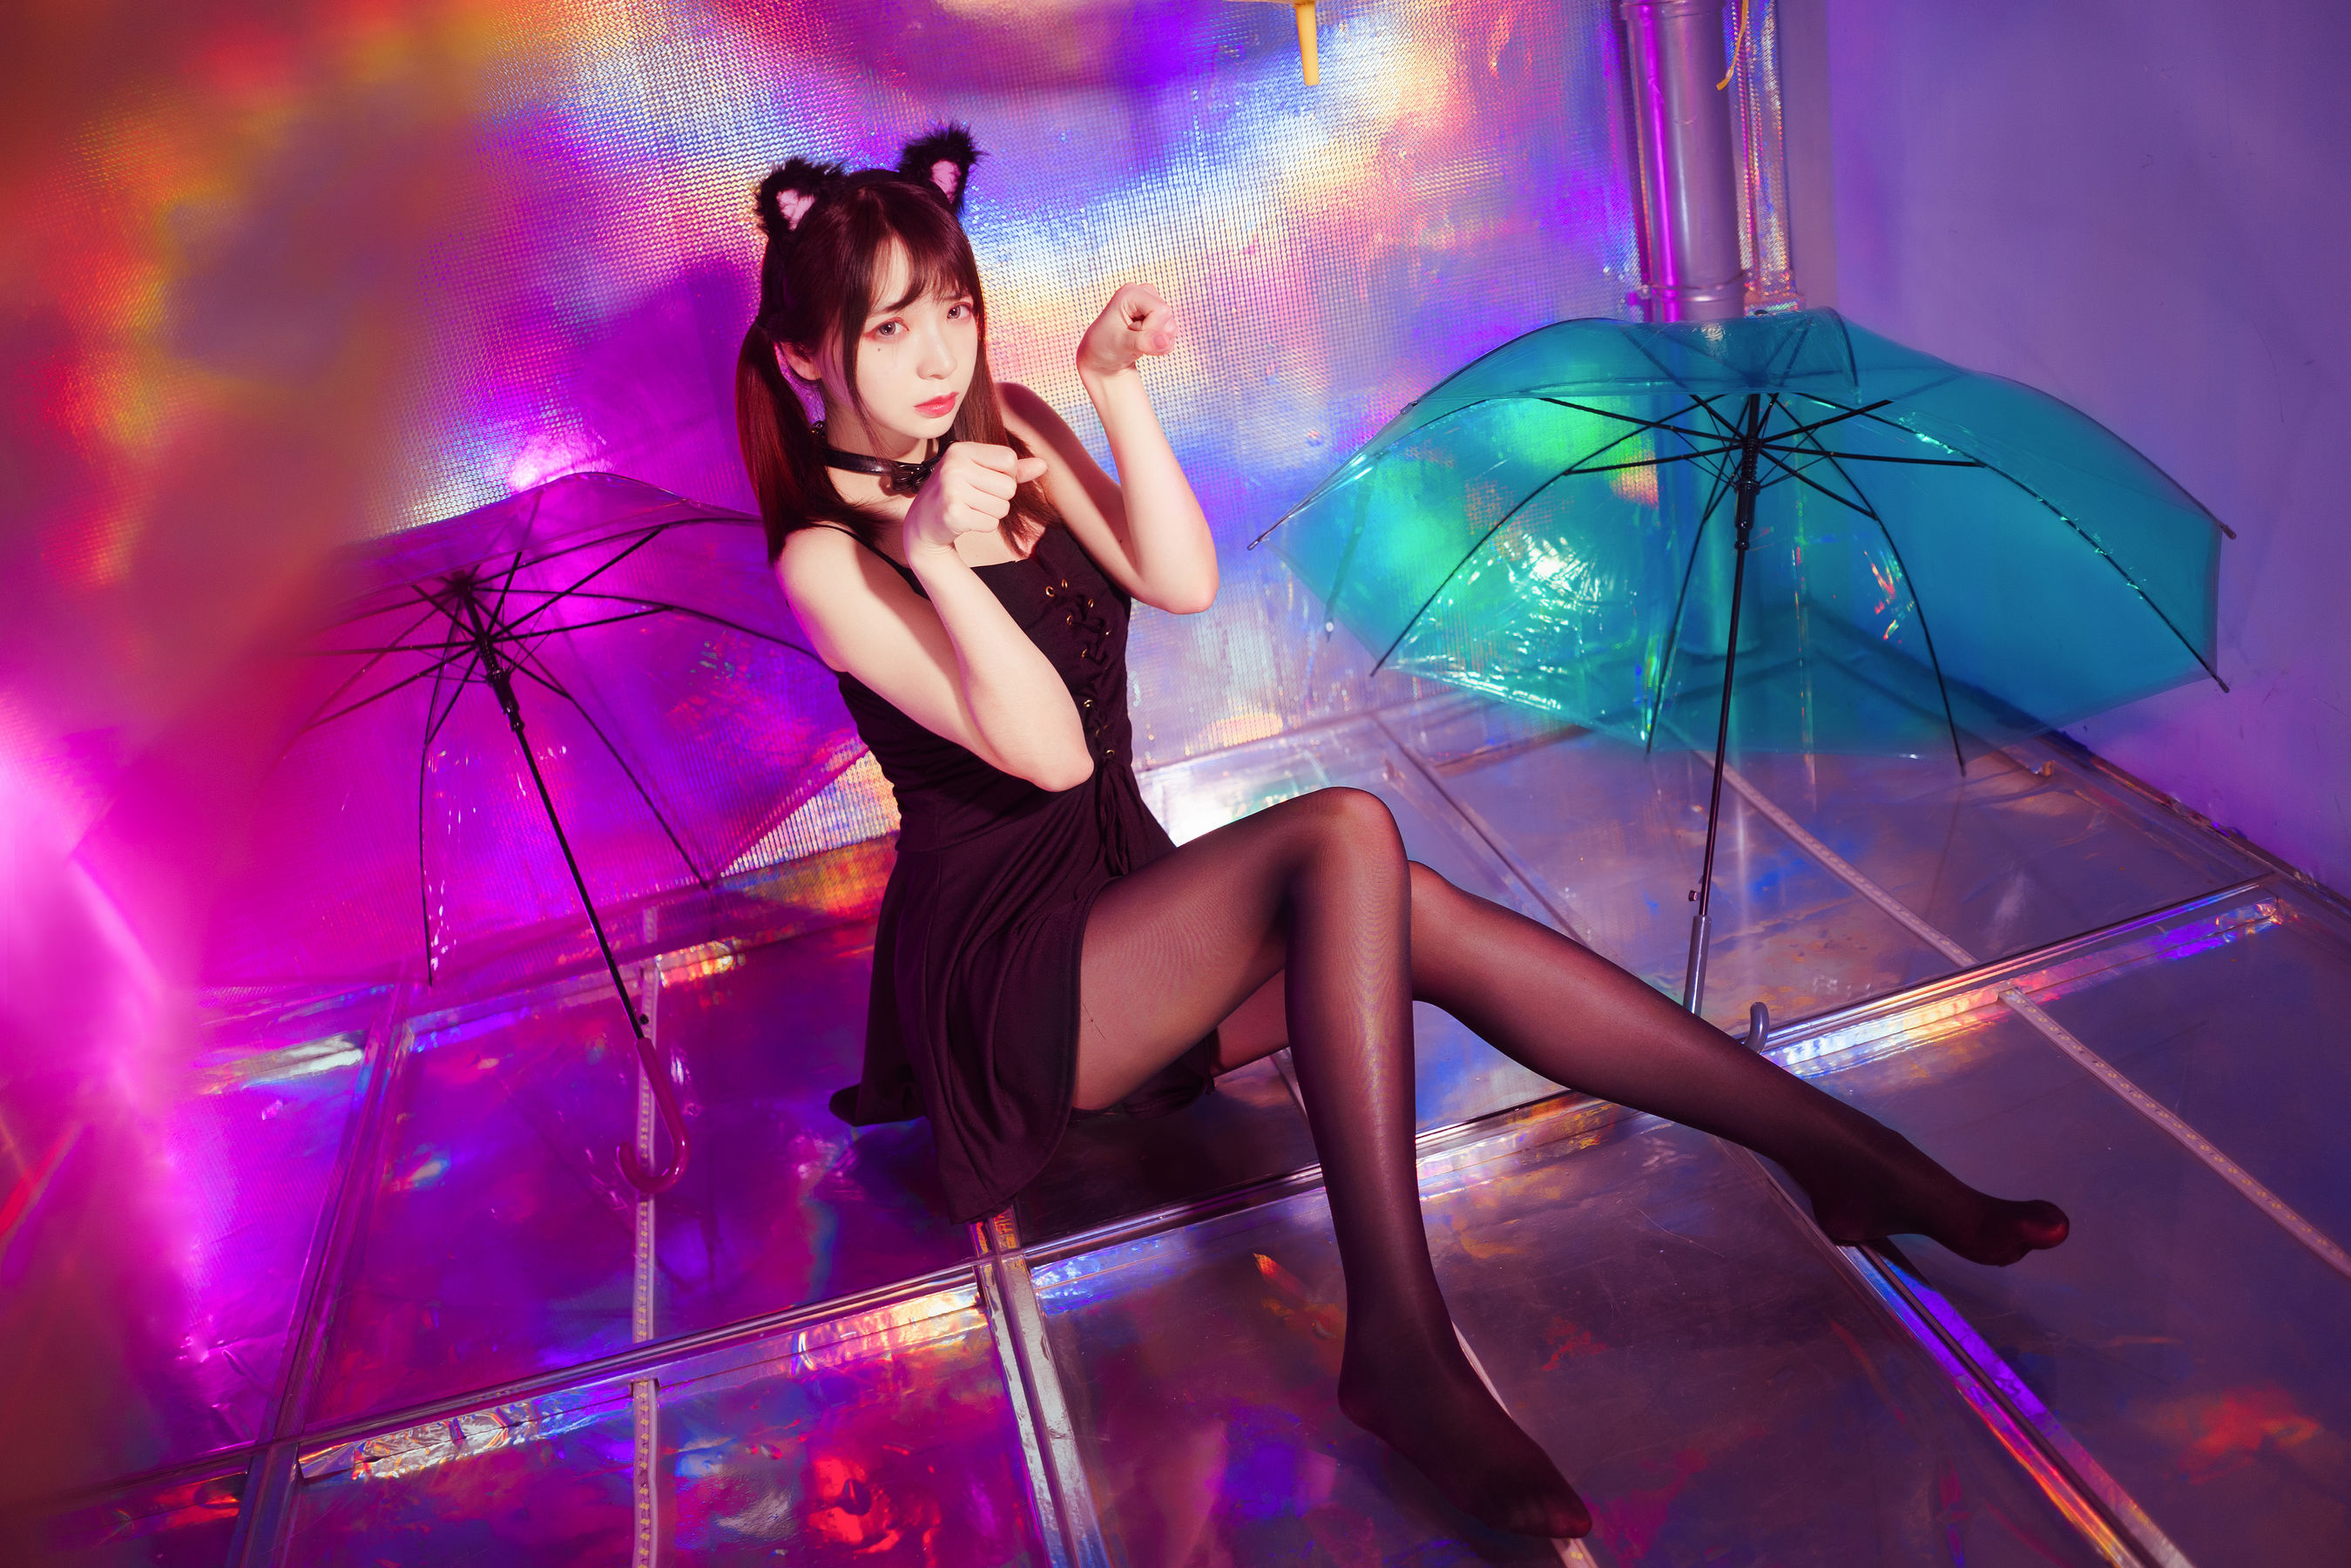 Women Model Asian Women Indoors Umbrella Twintails Cat Ears 2699x1800